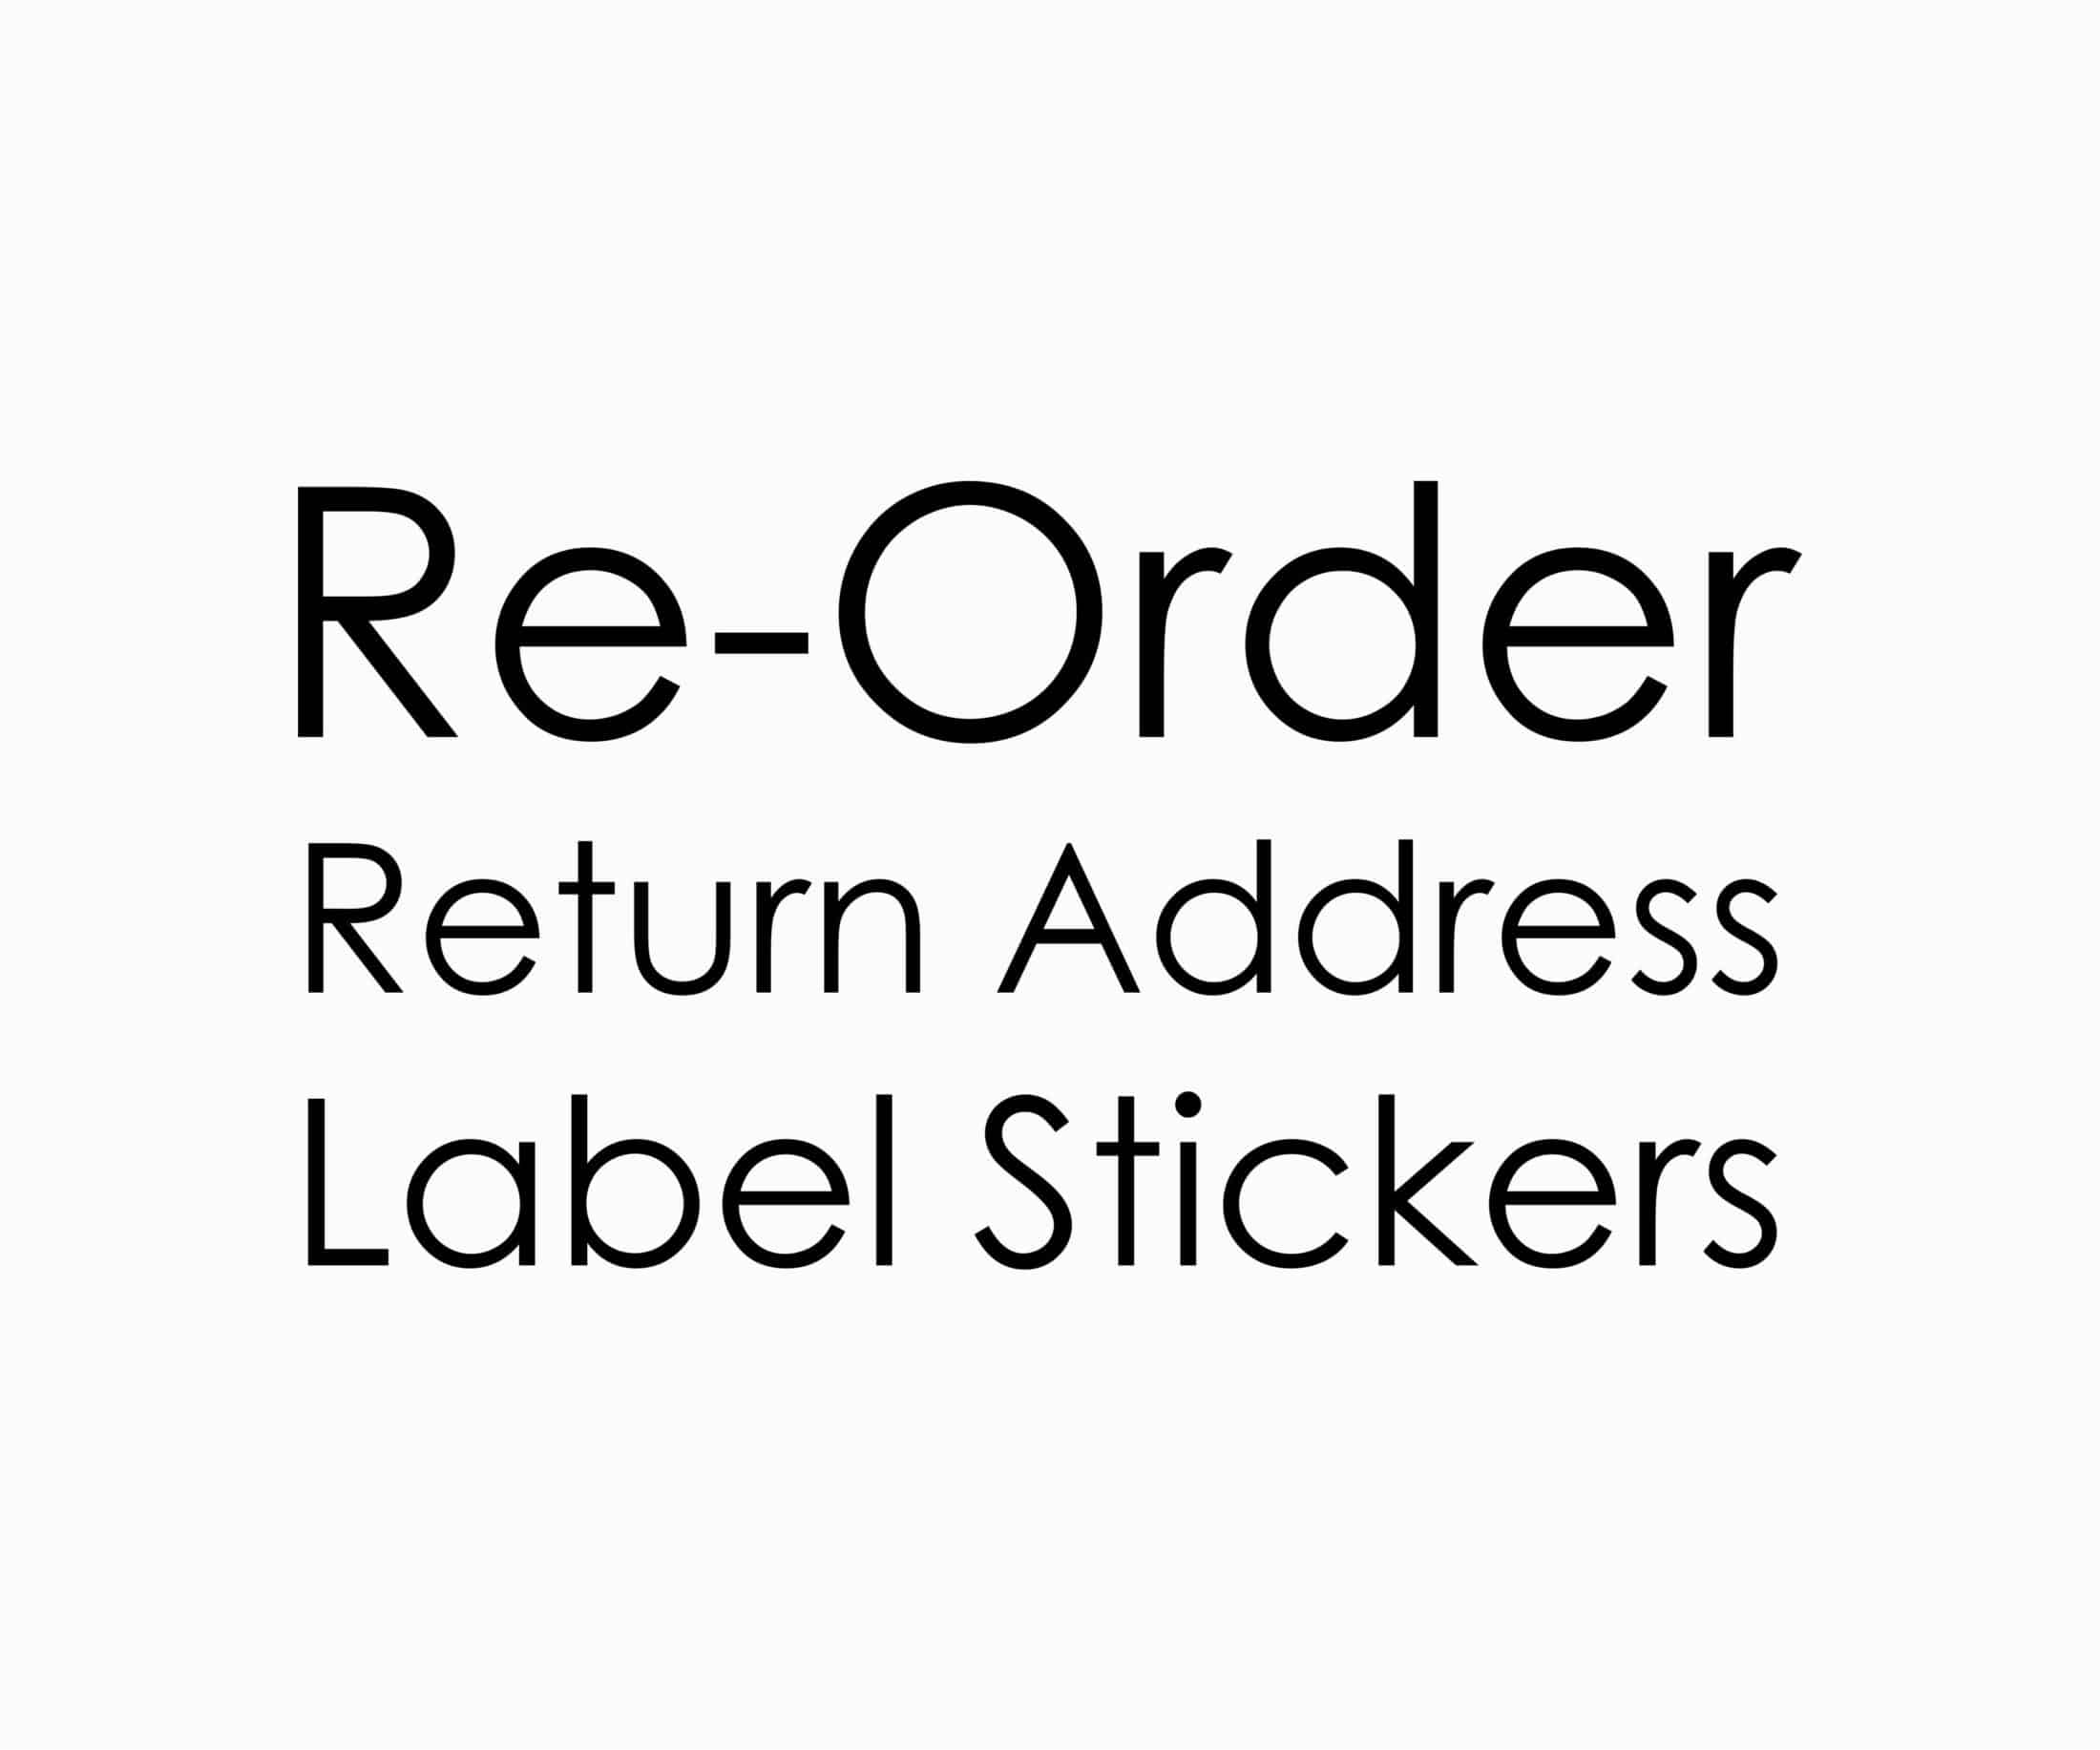 Reorder Reorder Return Address Labels.